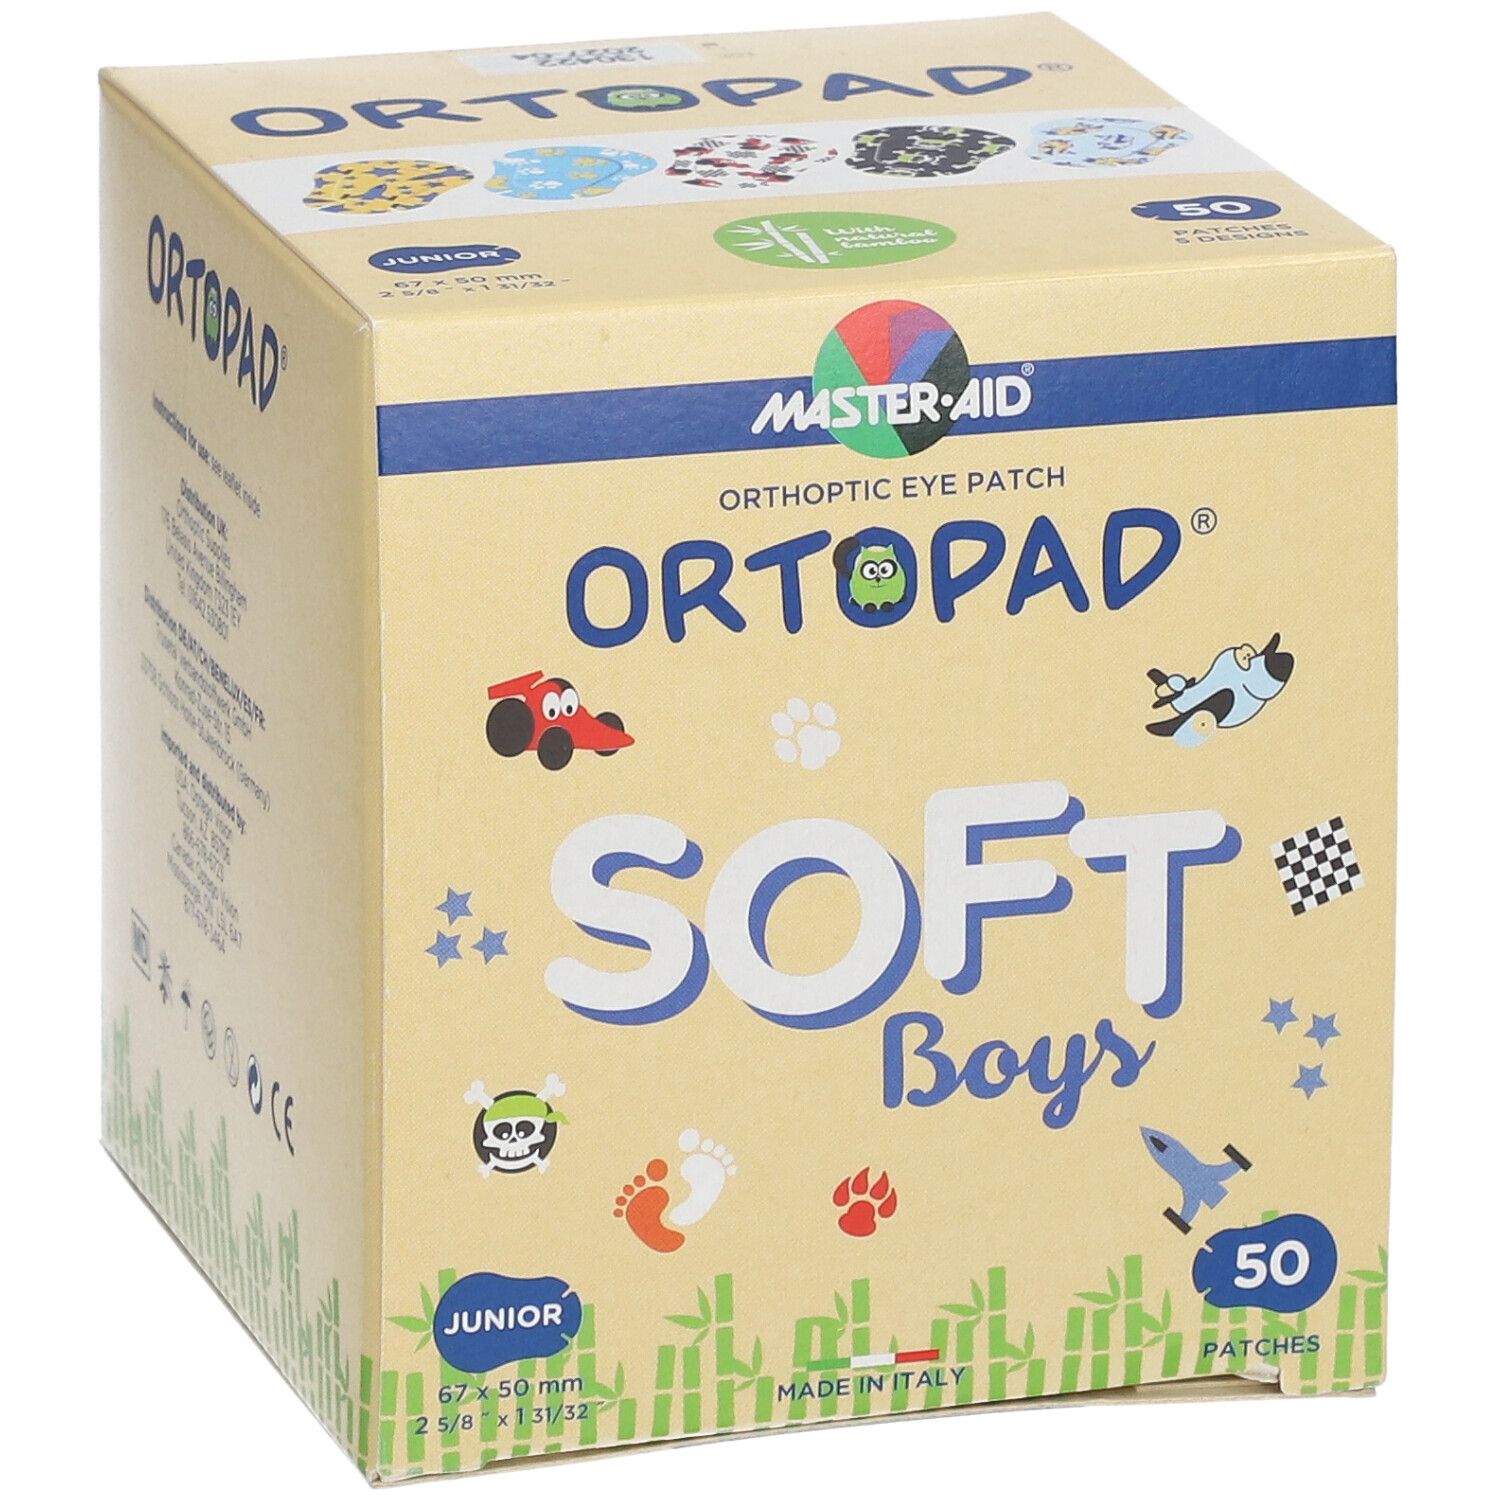 Ortopad Soft Boys Junior 67x50mm 72241